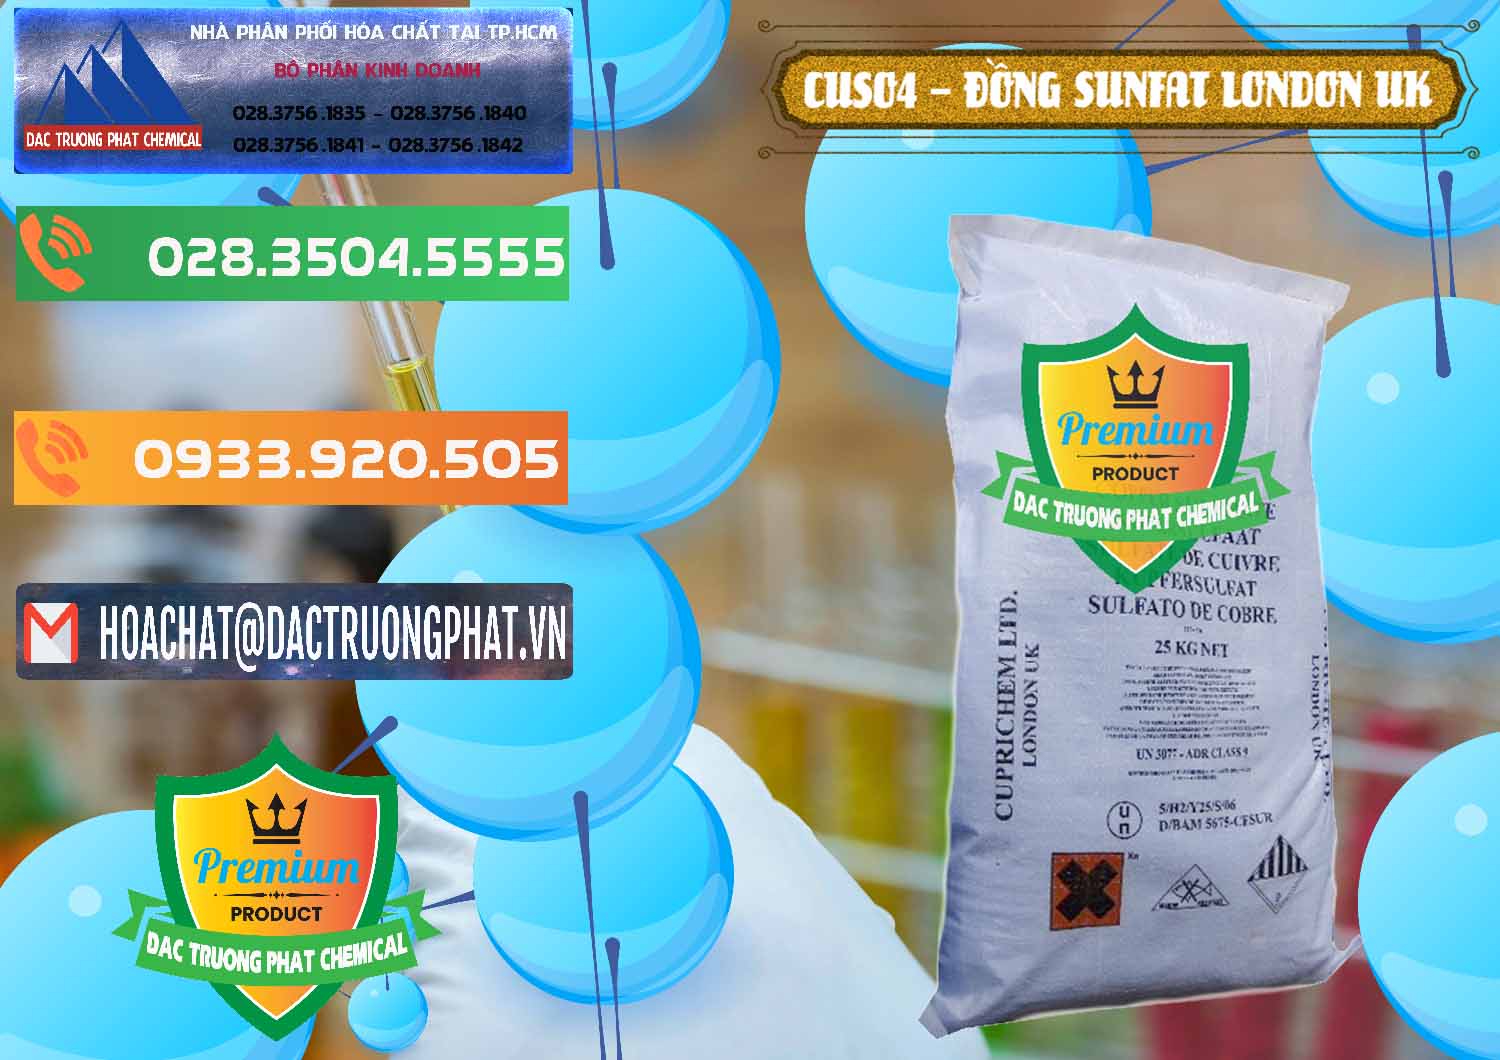 Cung ứng - bán CuSO4 – Đồng Sunfat Anh Uk Kingdoms - 0478 - Đơn vị bán & phân phối hóa chất tại TP.HCM - hoachatxulynuoc.com.vn